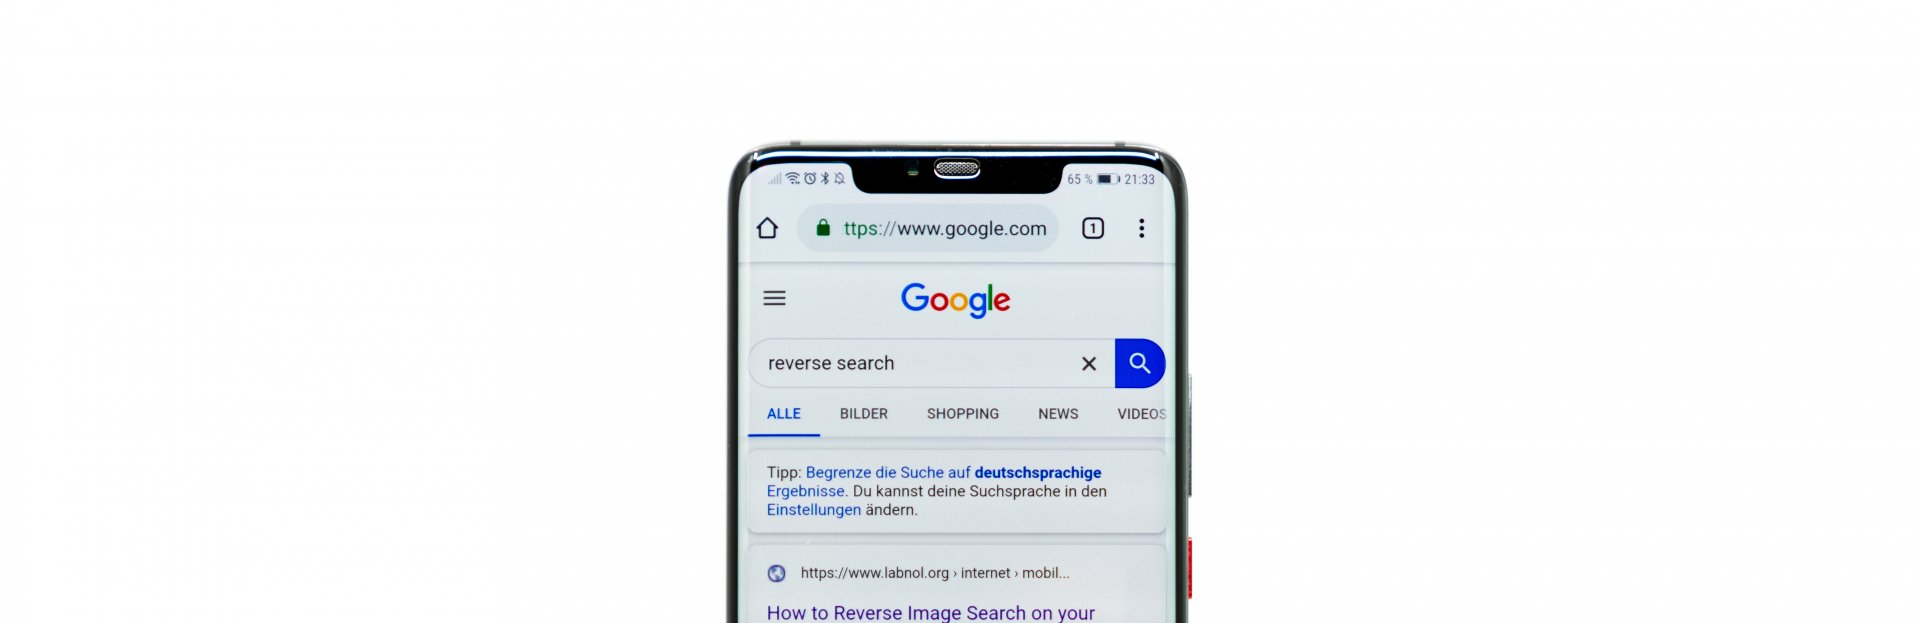 Smartphone mostrando resultados de Google